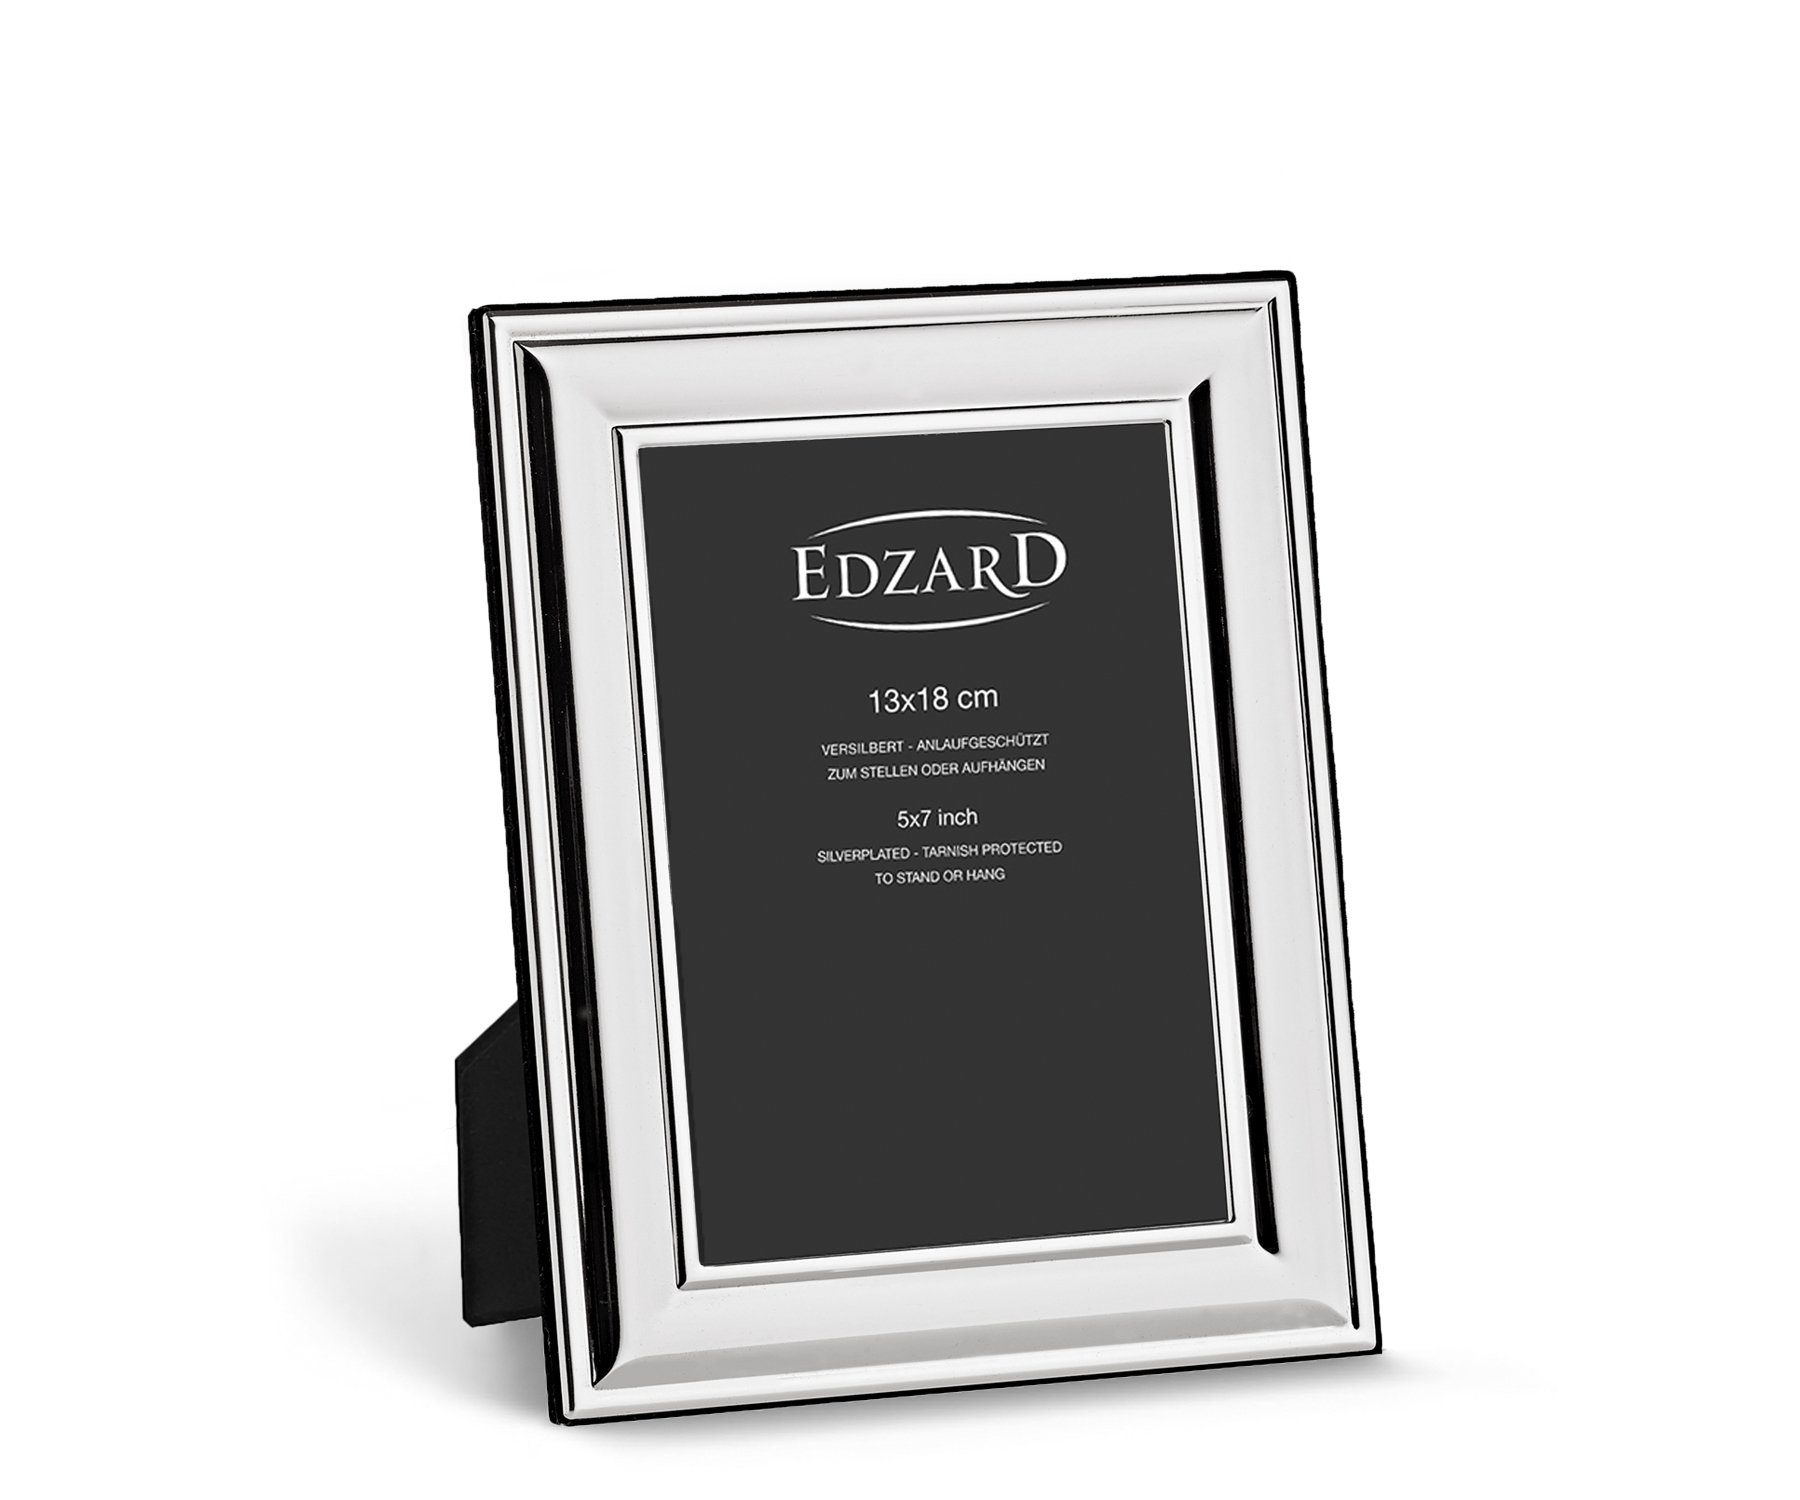 EDZARD Bilderrahmen Sunset, versilbert und anlaufgeschützt, für 13x18 cm Bilder - Fotorahmen